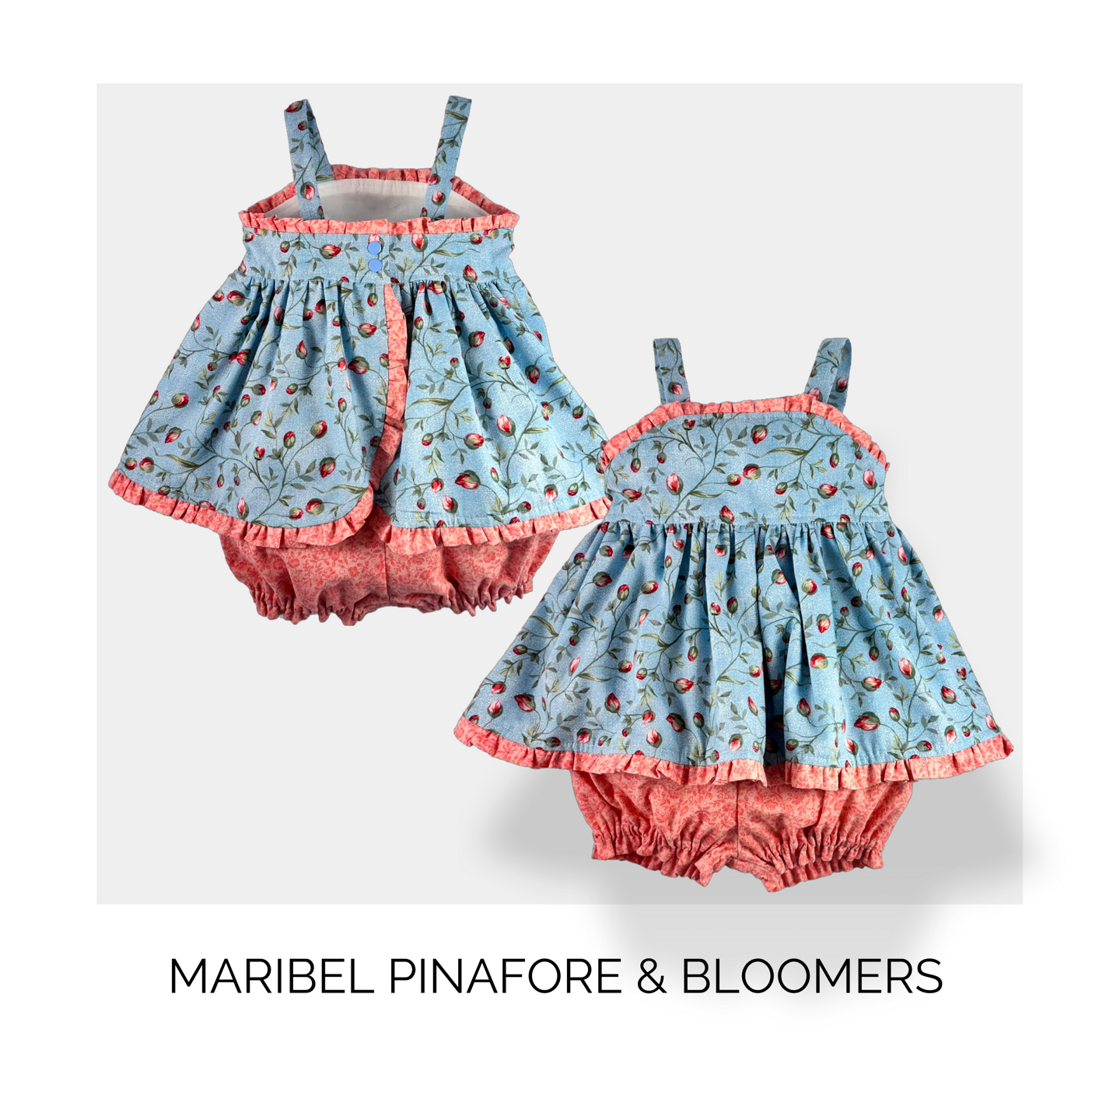 Maribel Pinafore and Bloomers